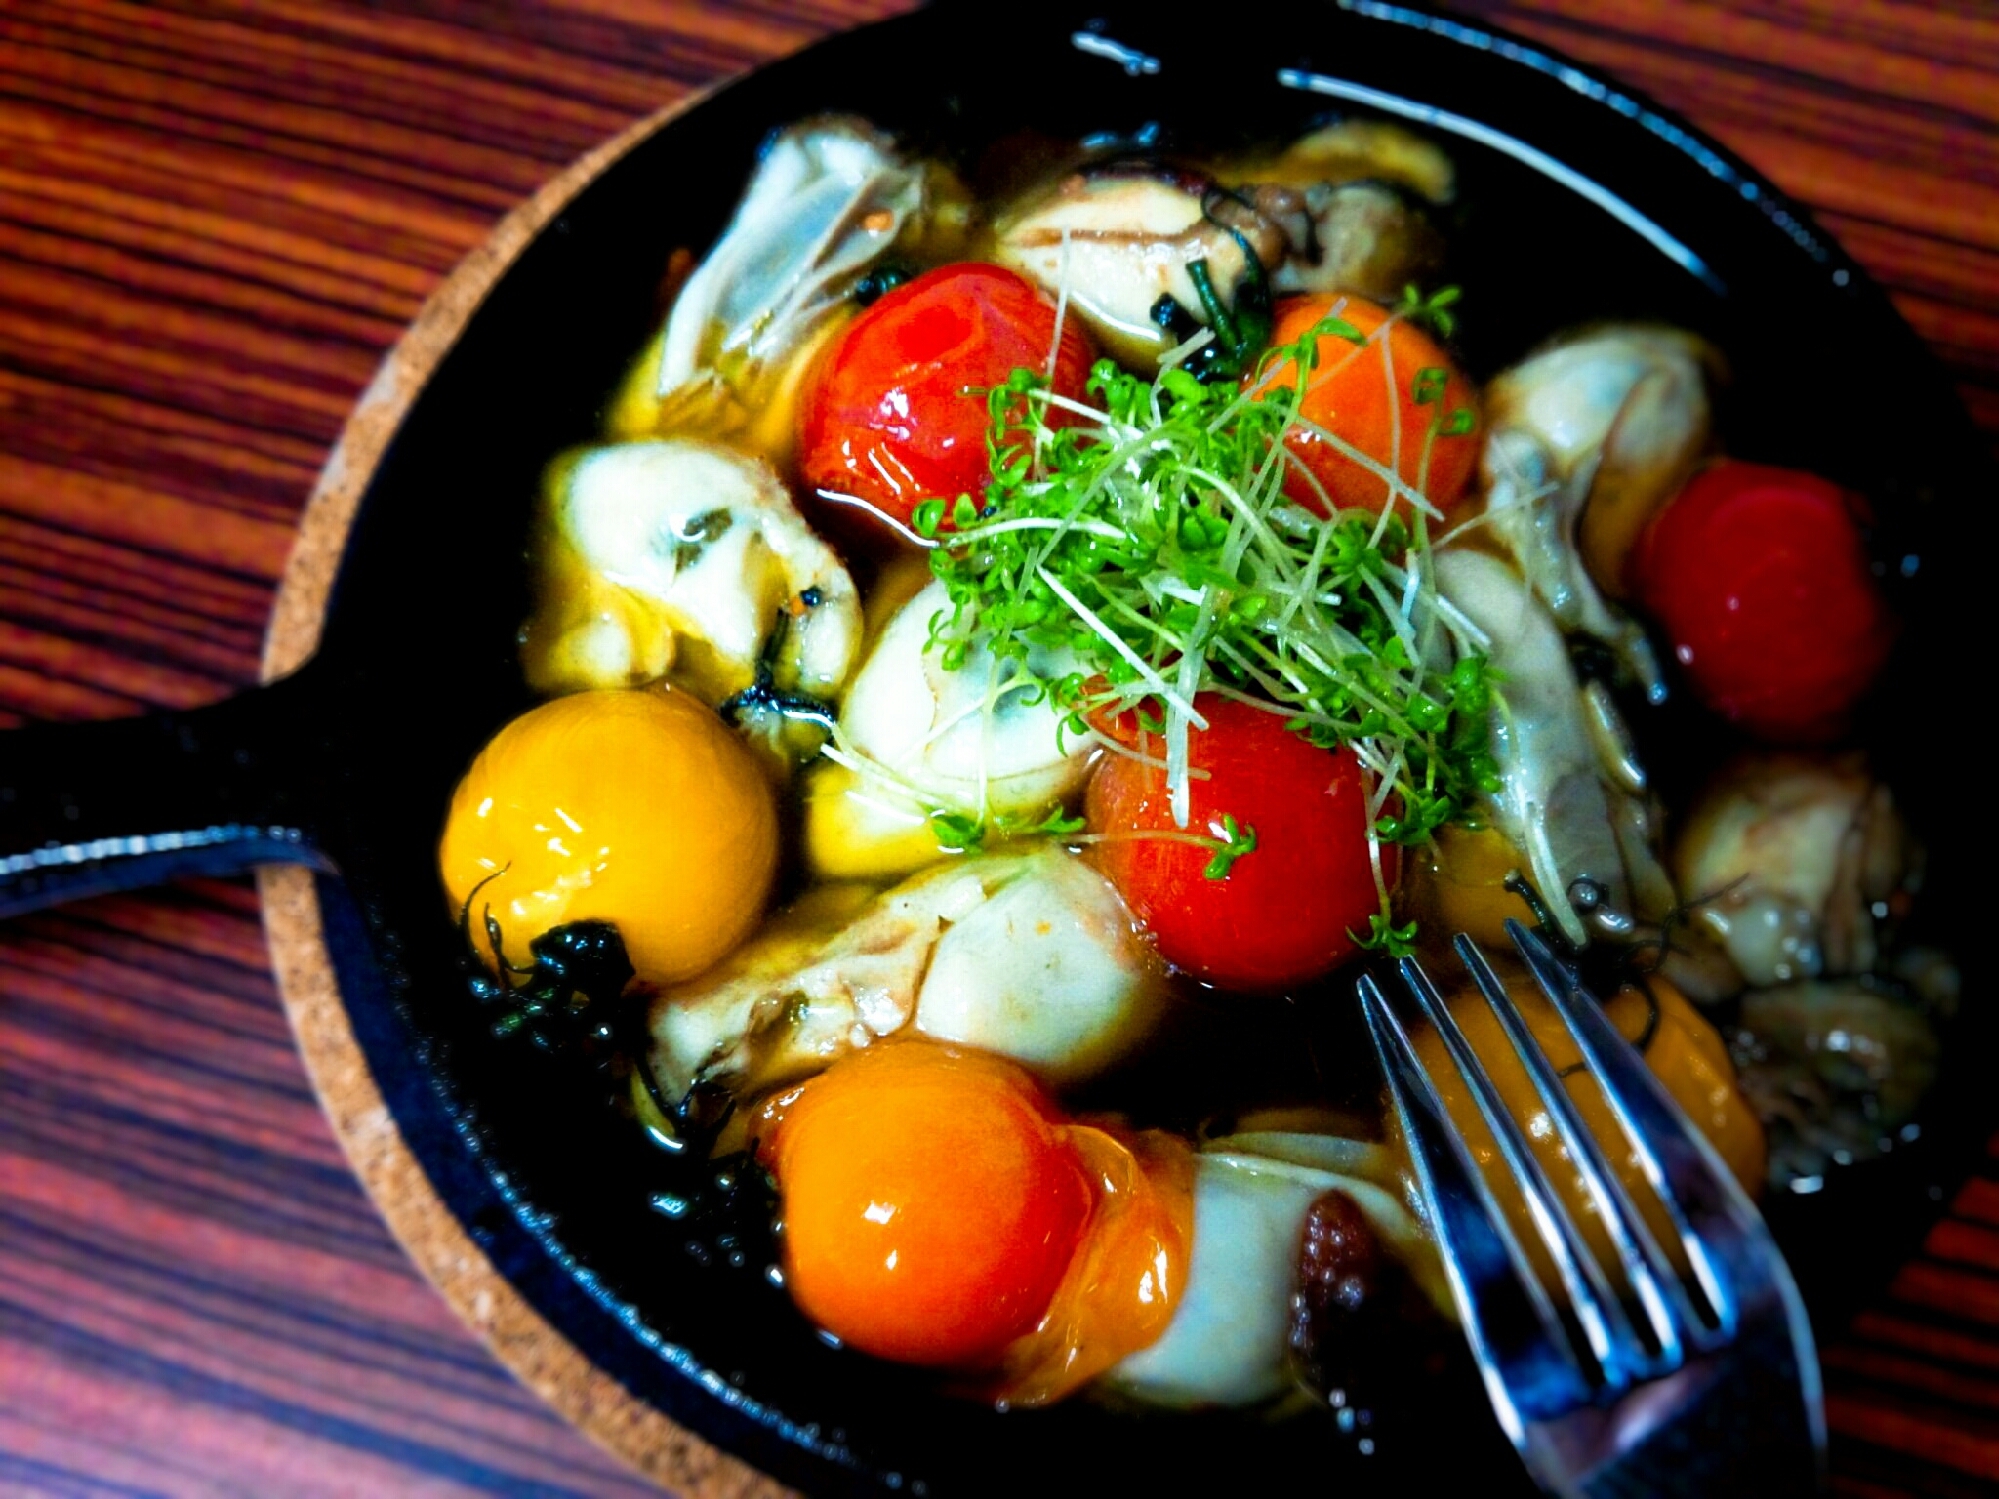 スキレットに牡蠣とミニトマトのアヒージョが盛られている様子